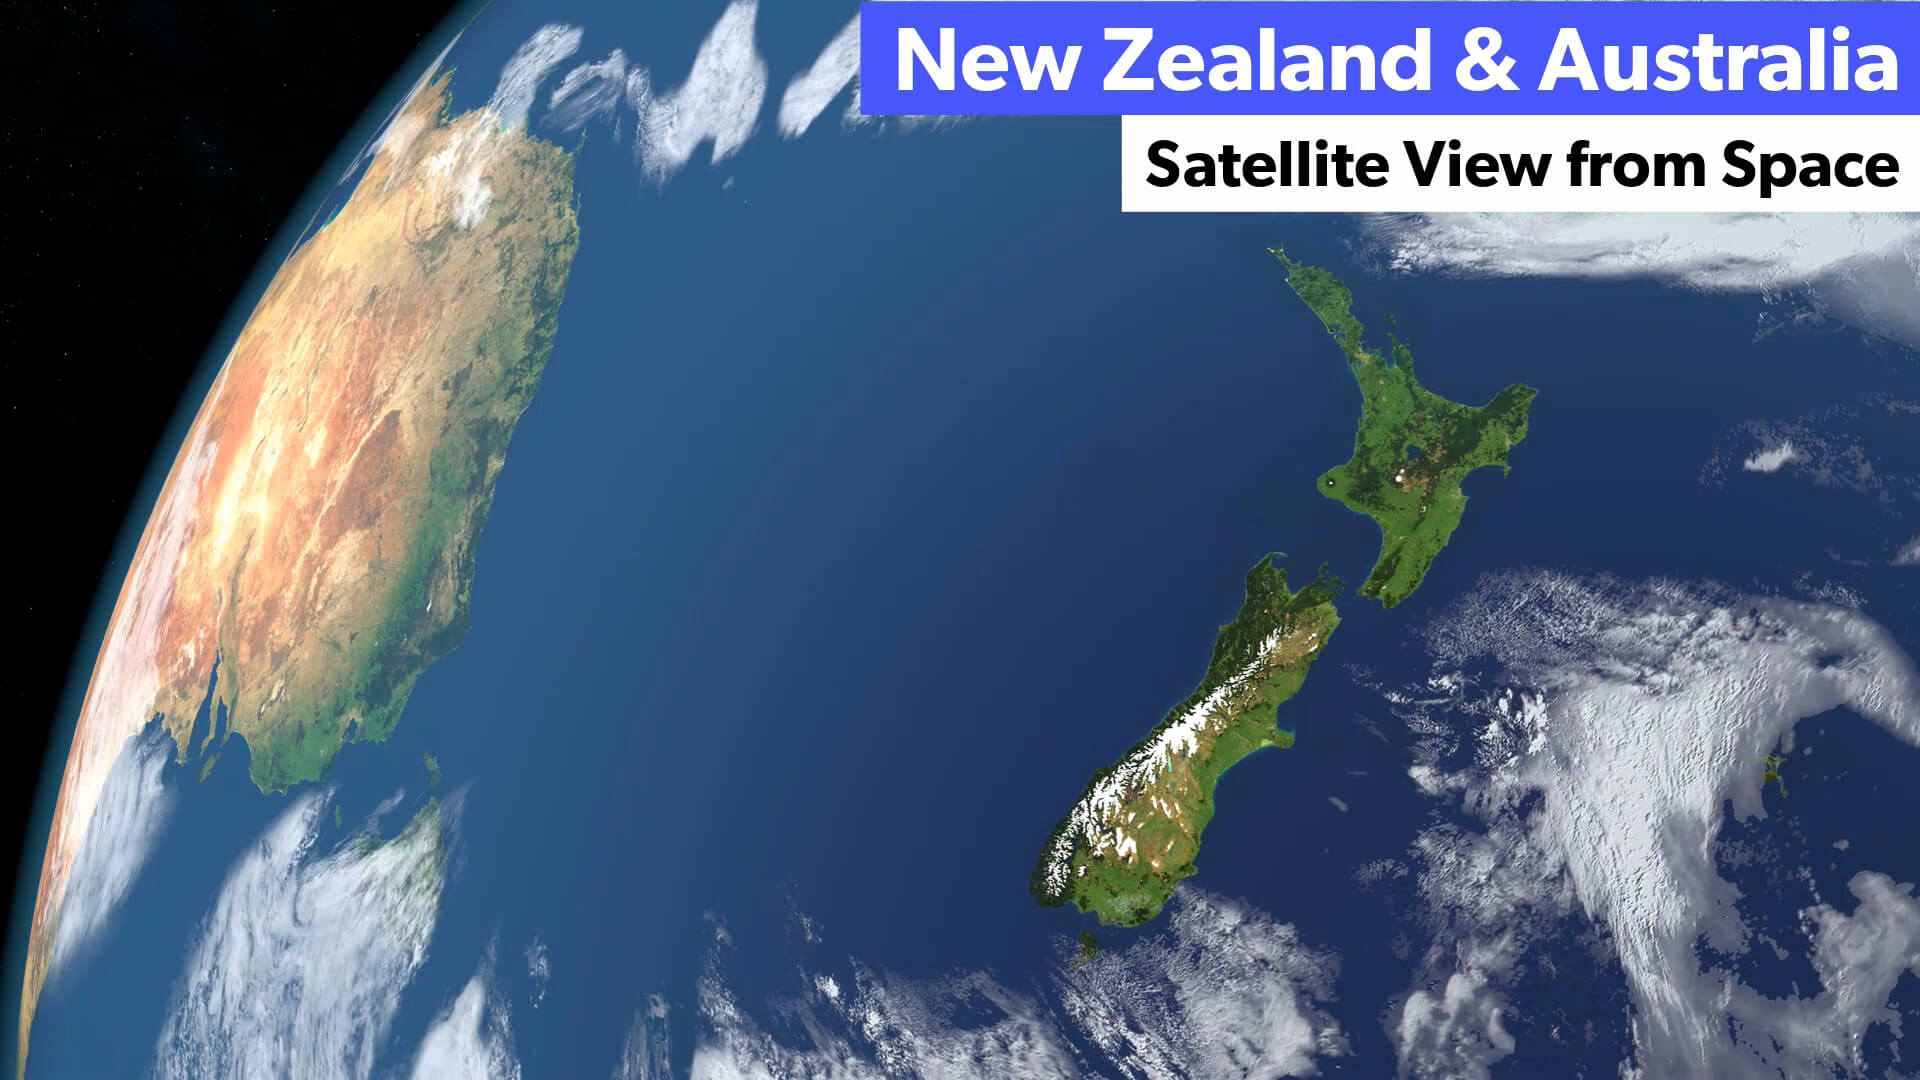 New Zealand and Australia Satellite Image